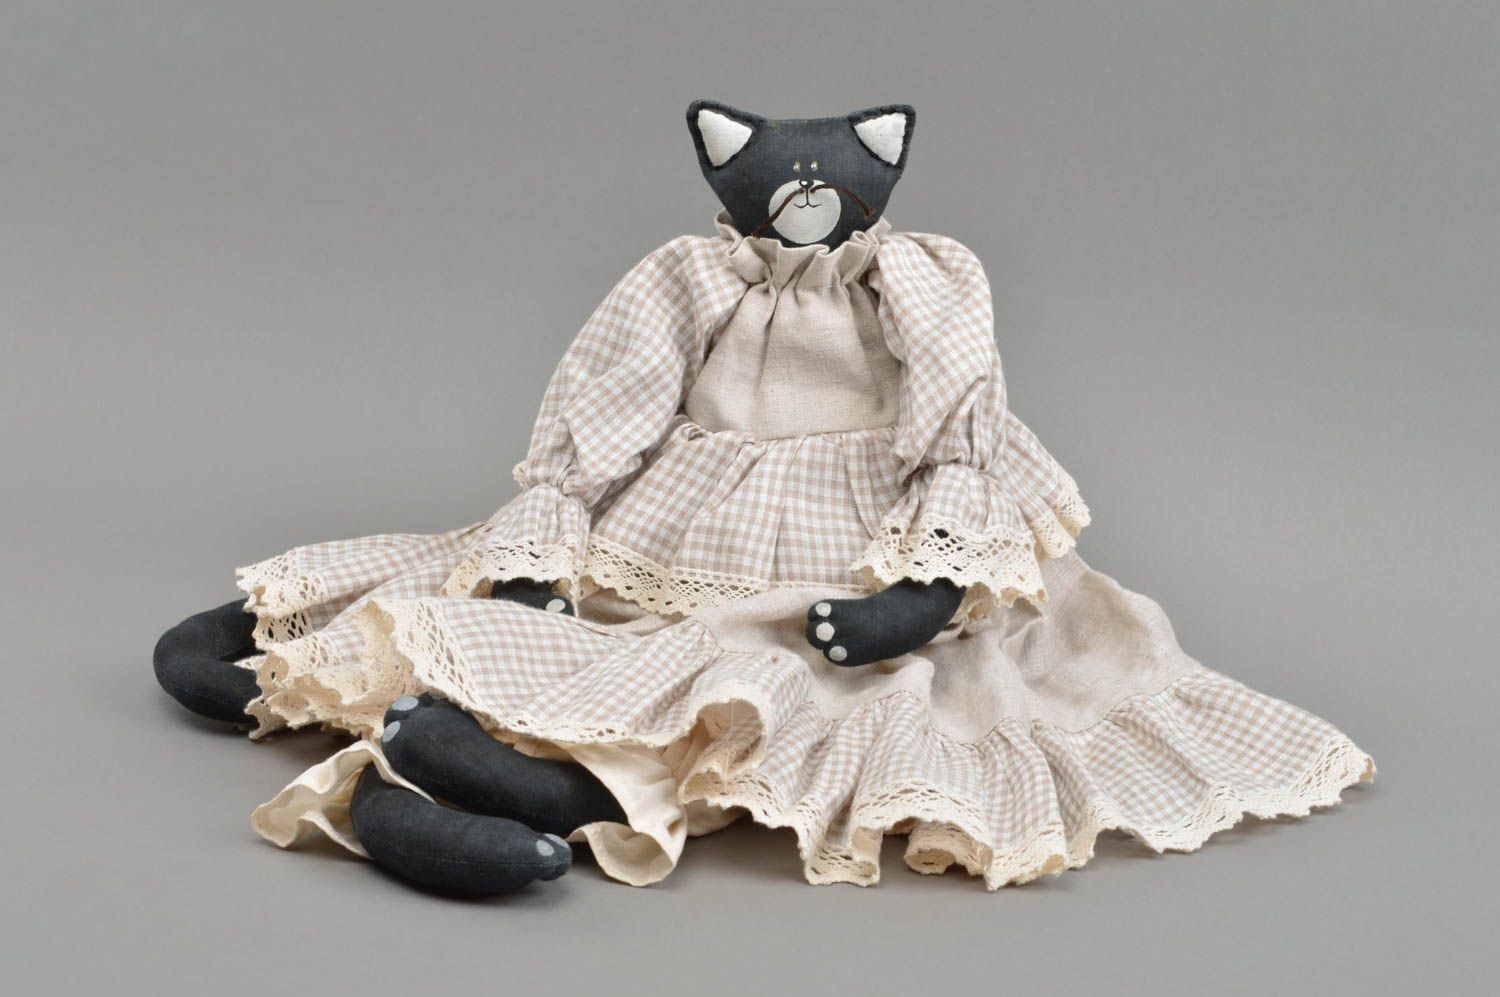 Textil Kuscheltier Katze schwarz im hellen Kleid handmade schön originell foto 3